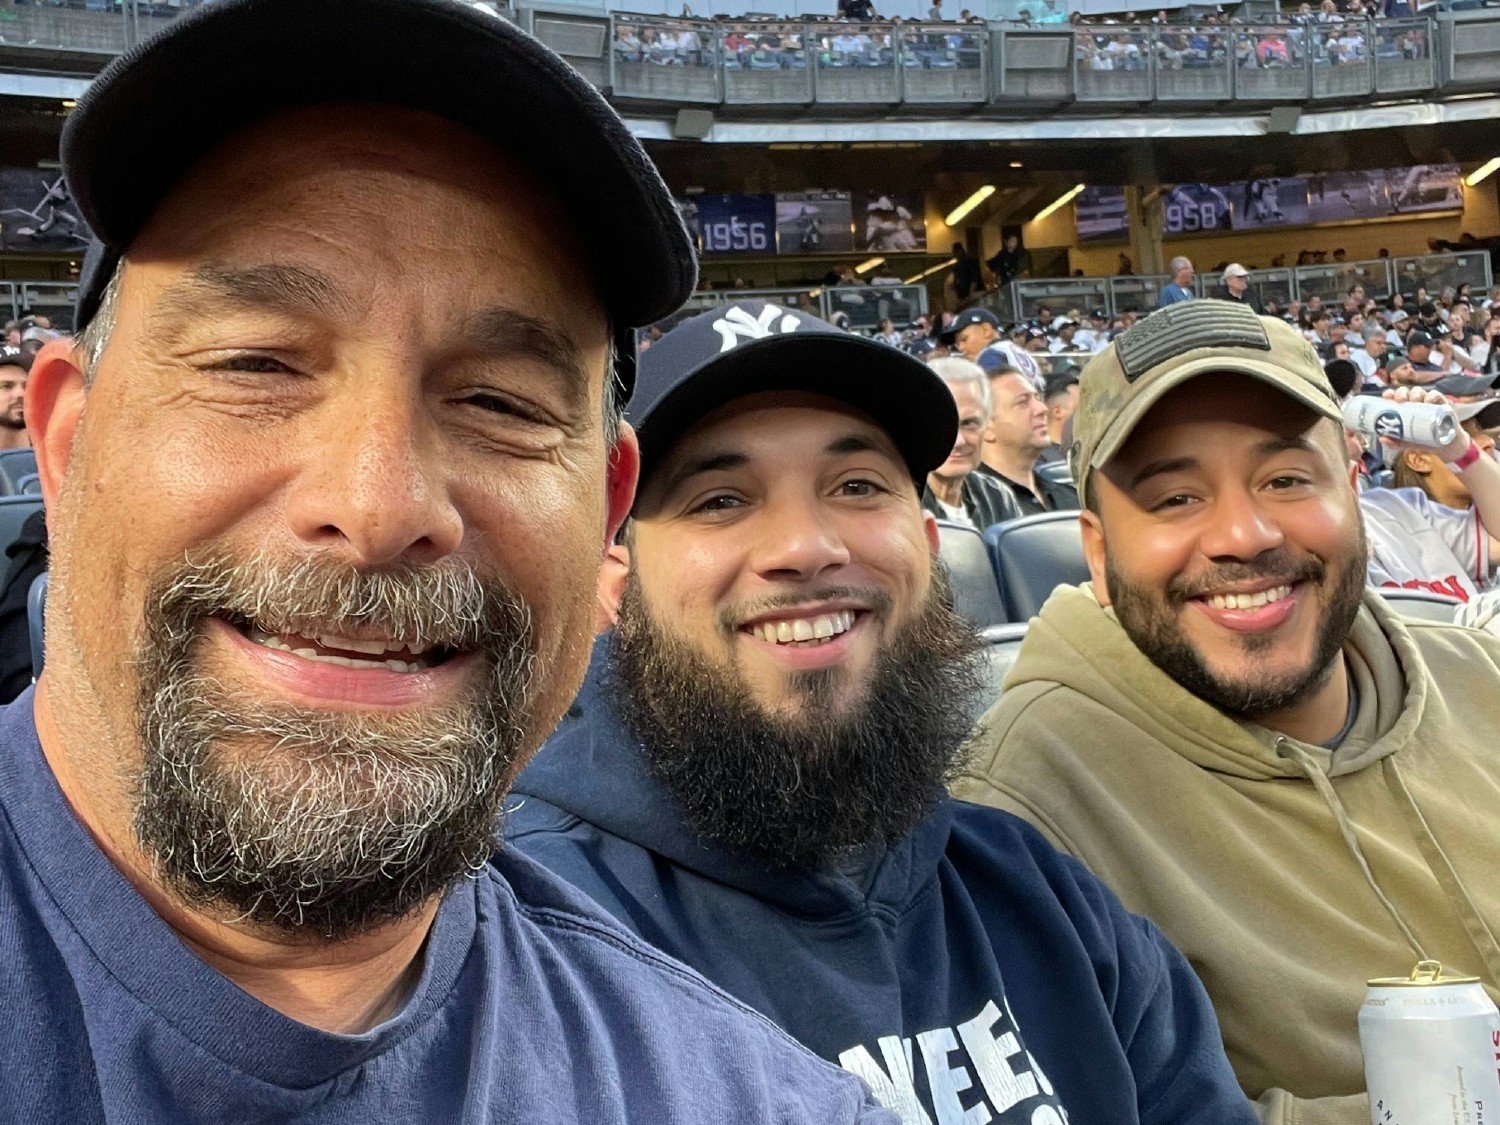 Team members Bob, Niko, and Adams enjoying a Yankees game.